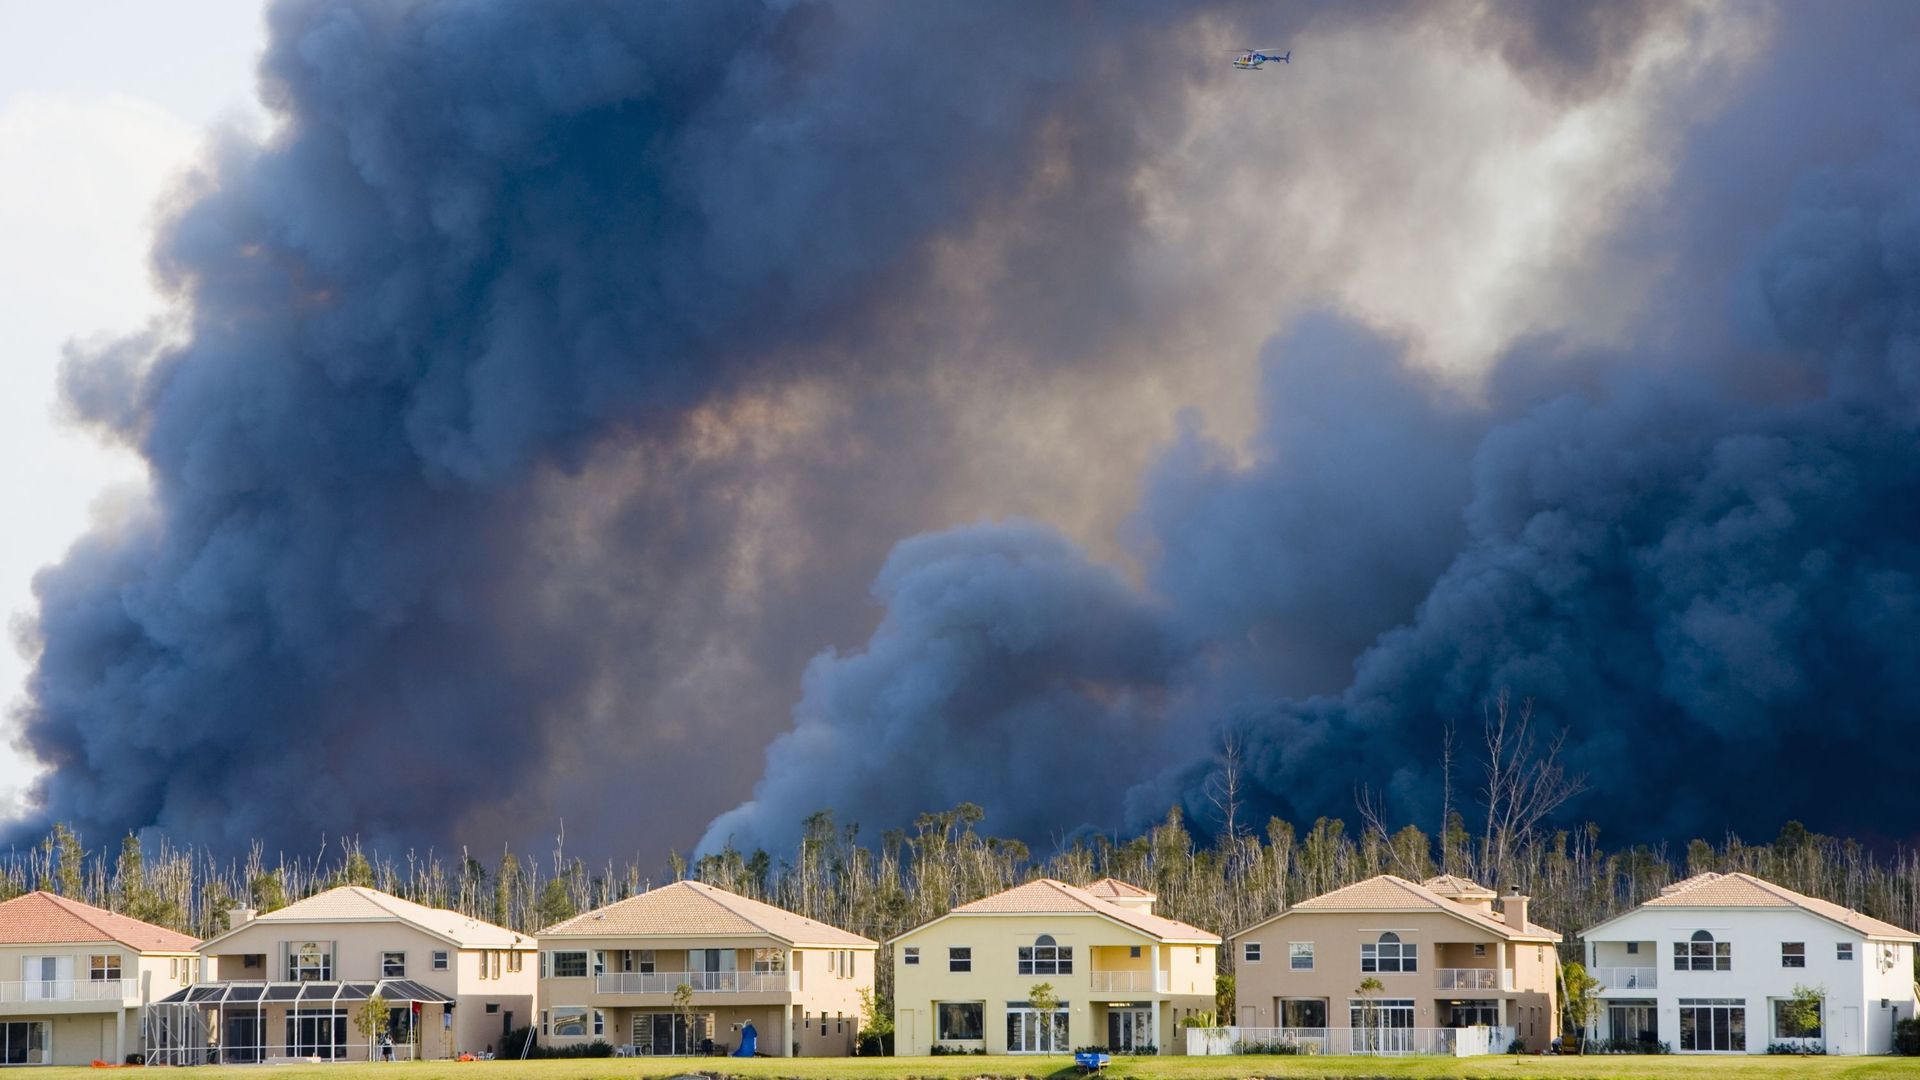 Un hélicoptère survole la fumée d'incendies à proximité d'habitations en Floride.